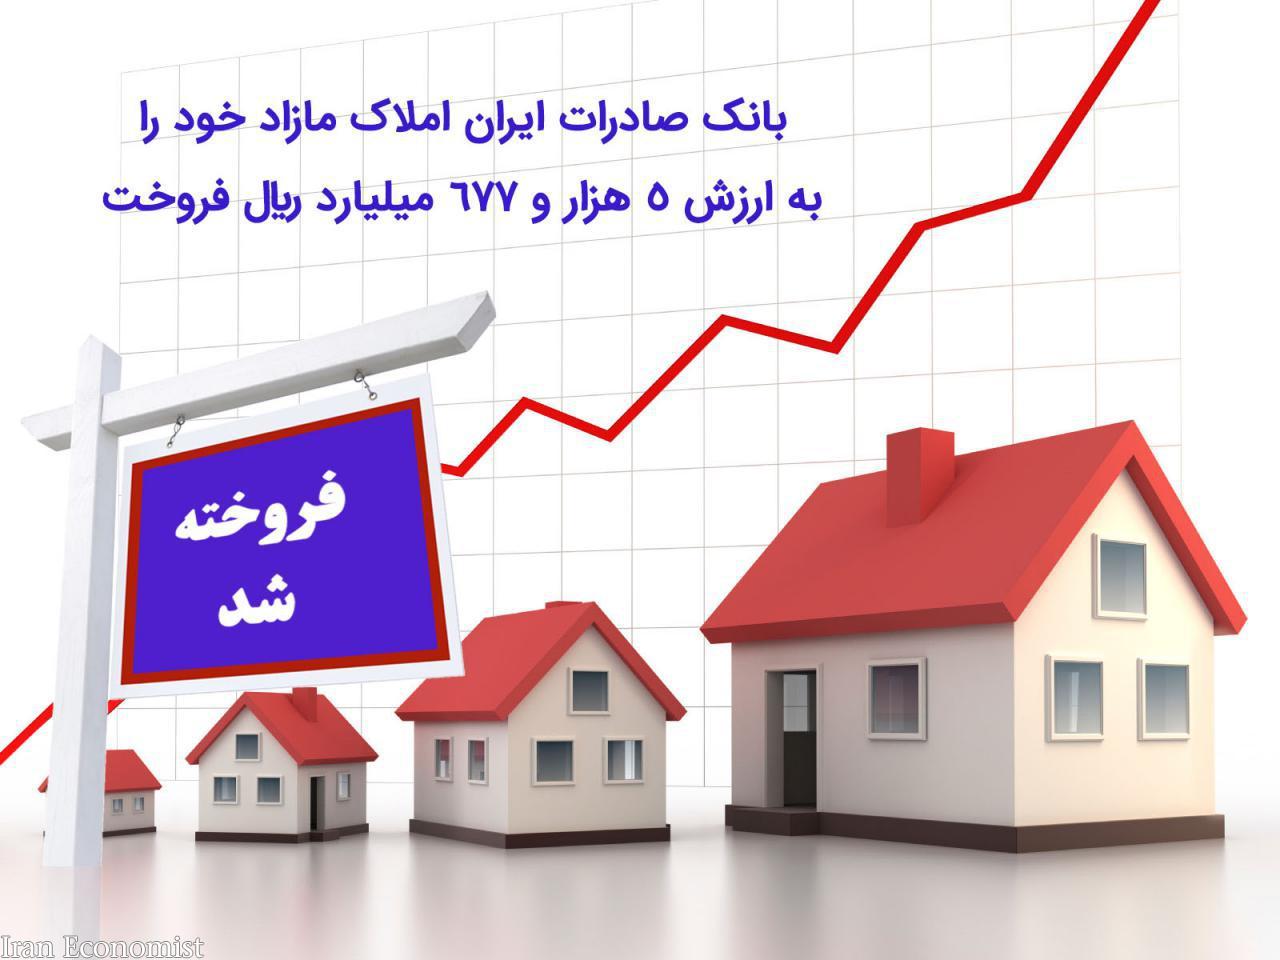 بانک صادرات ایران املاک مازاد خود را به ارزش 5 هزار و 677 میلیارد ریال فروخت